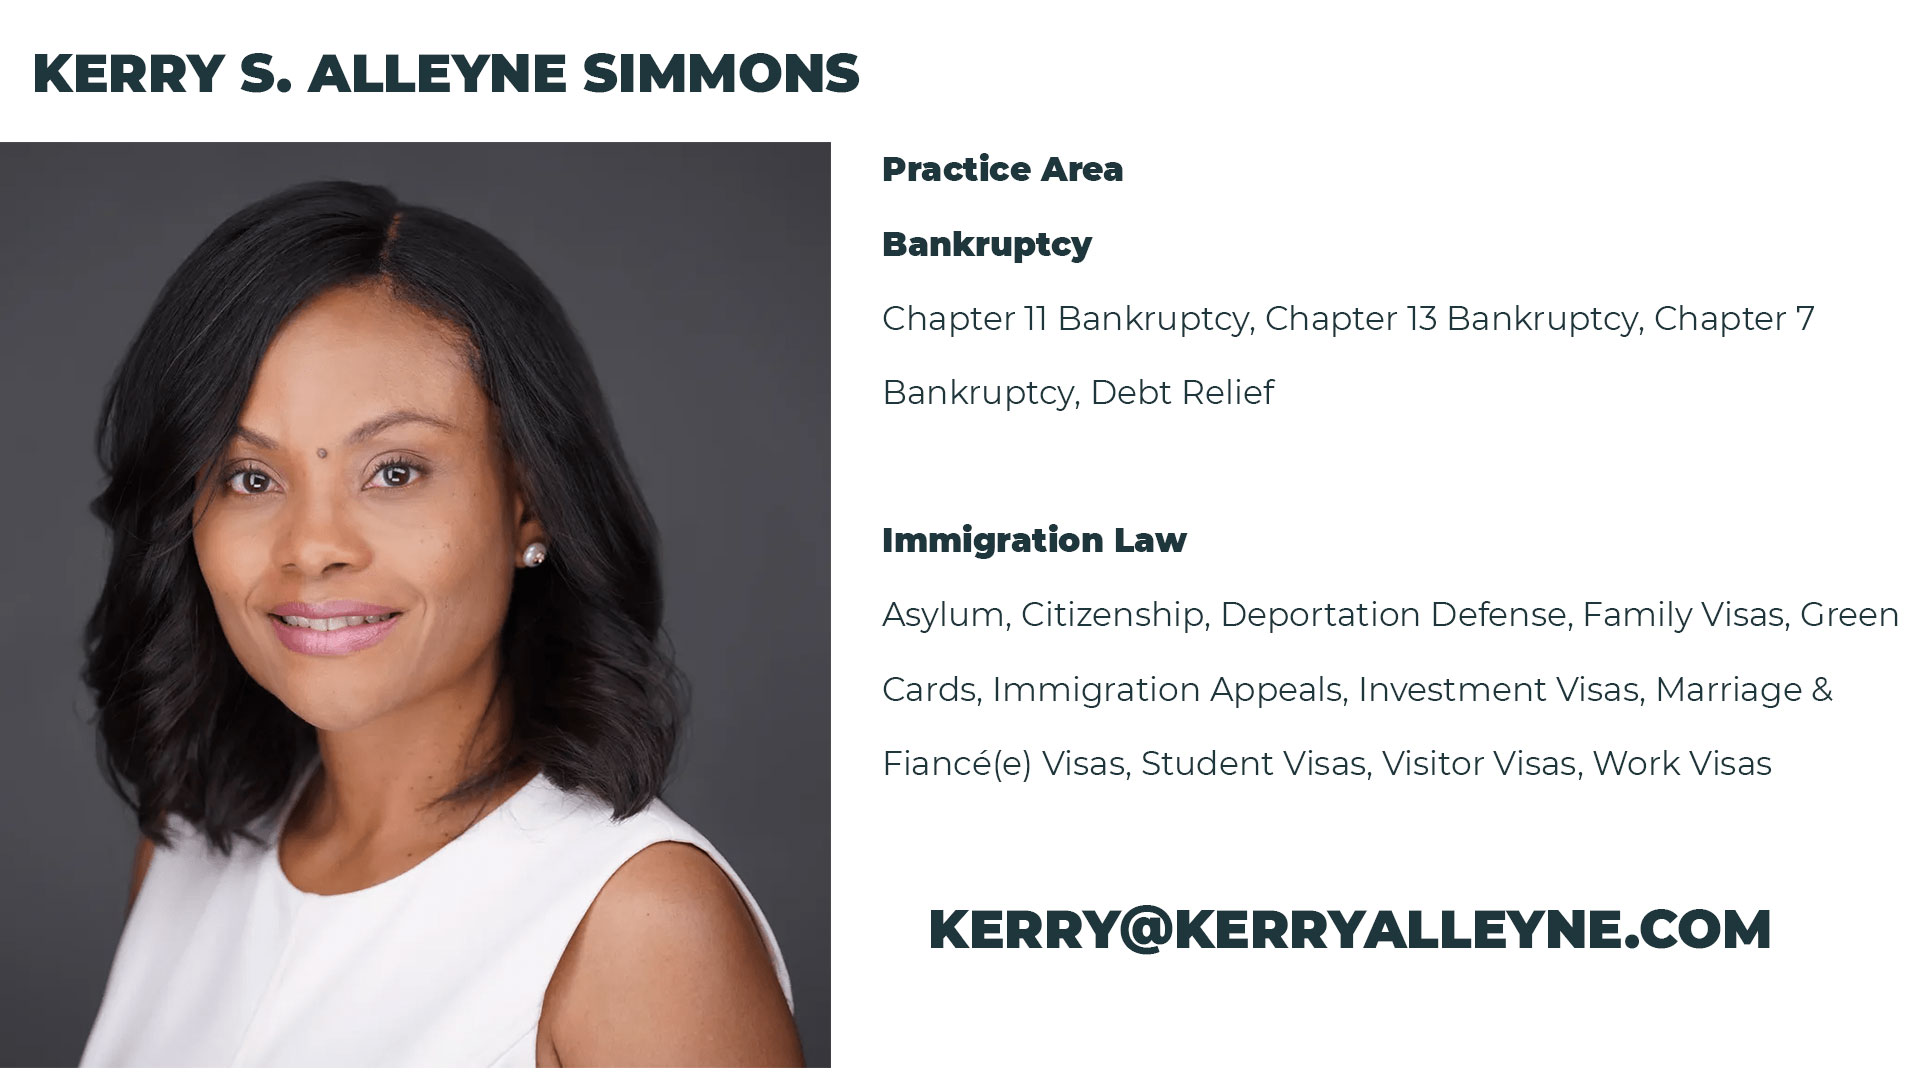 Kerry S. Alleyne Simmons